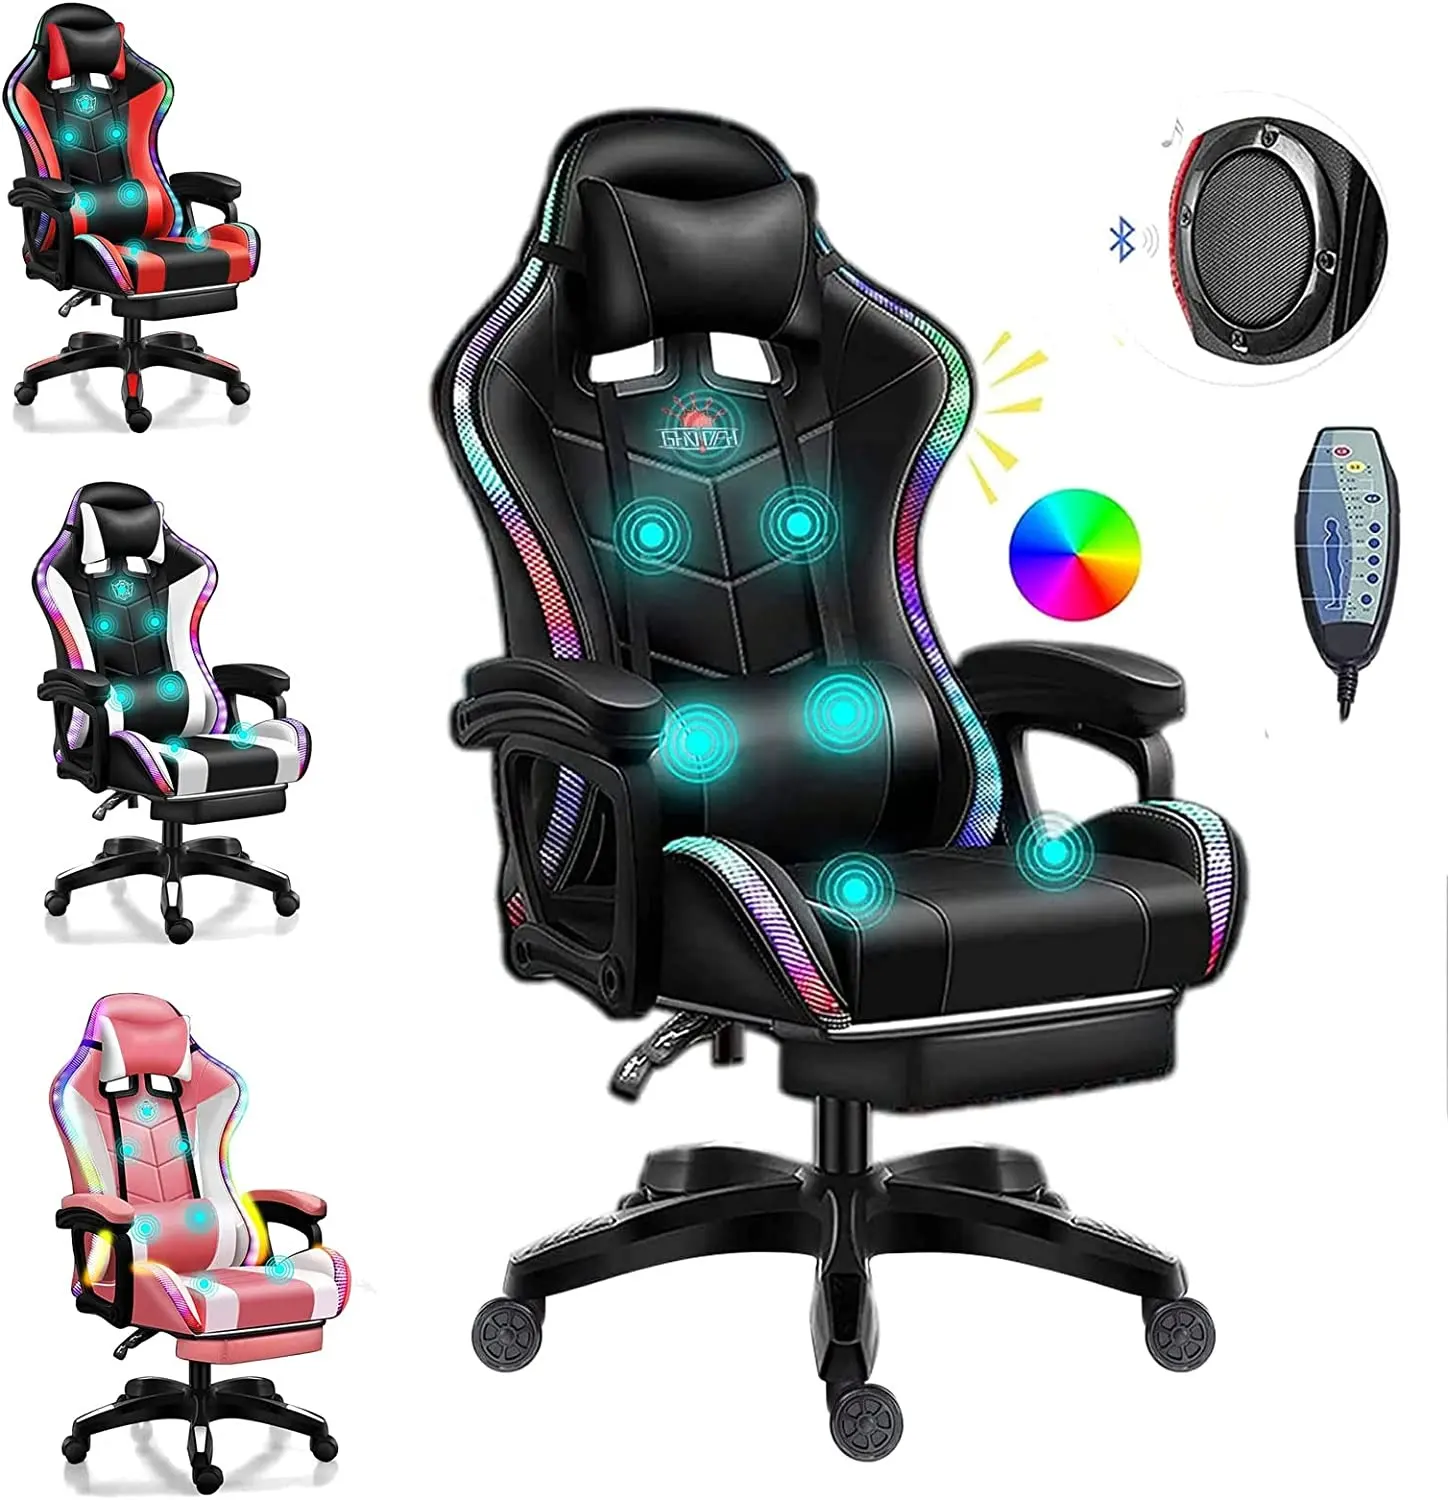 Cadeira de computador de massagem, cadeira popular de couro da turquia, massagem completa, música, vídeo game, cadeira de jogos com alto-falantes